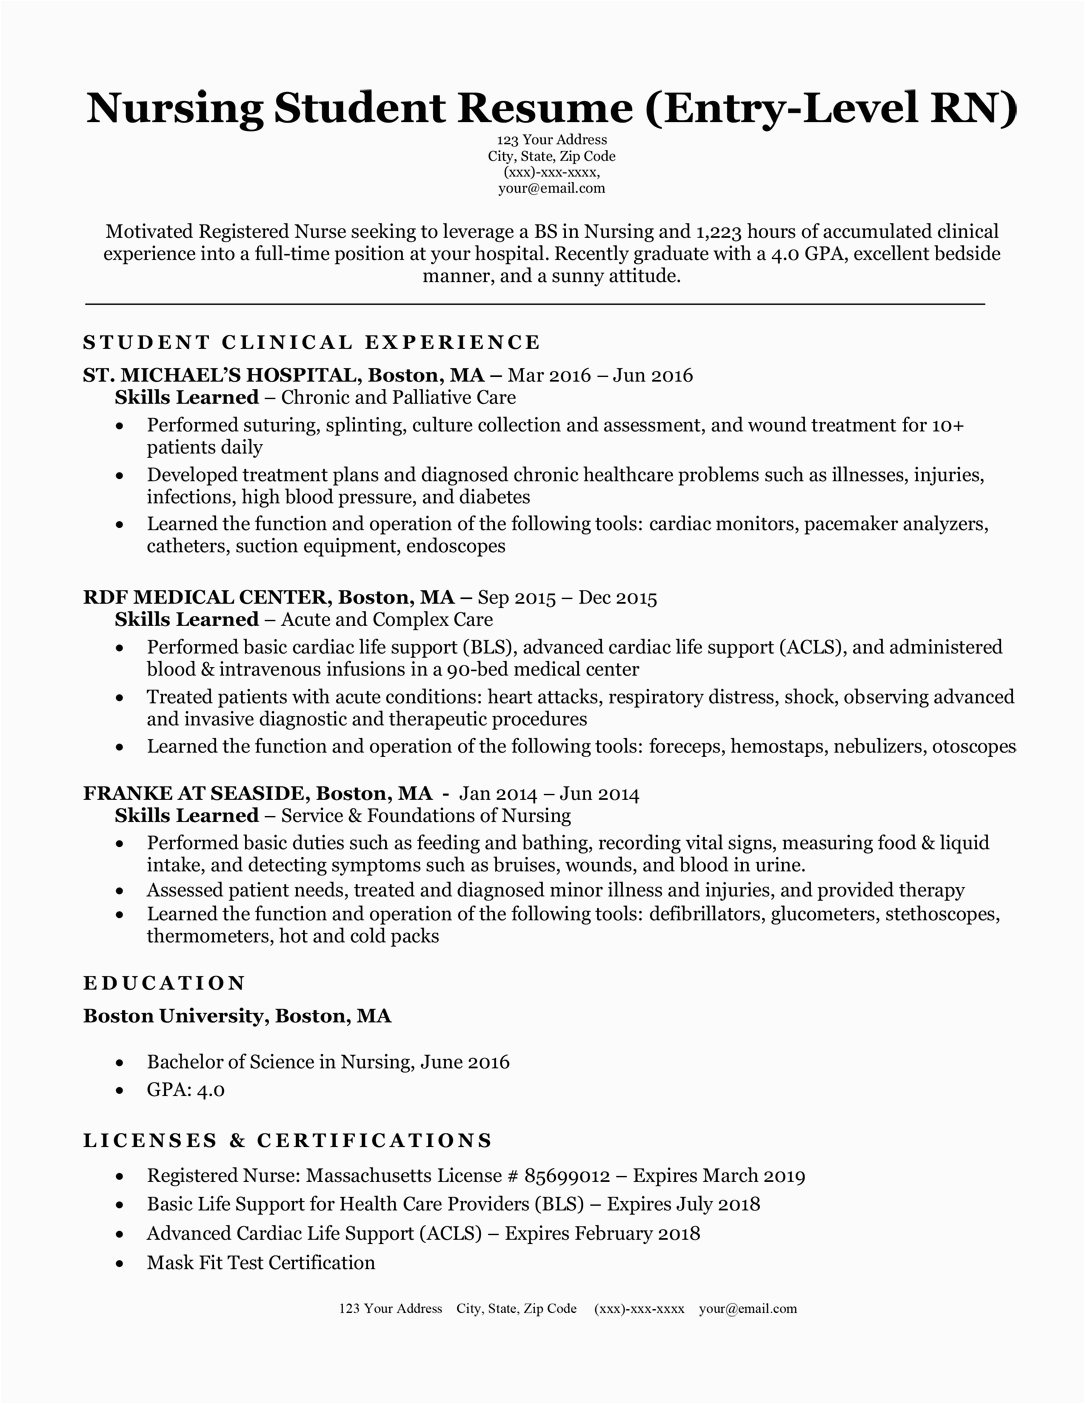 Sample Rn Resume with No Experience Nursing Student Resume with No Experience Database Letter Templates